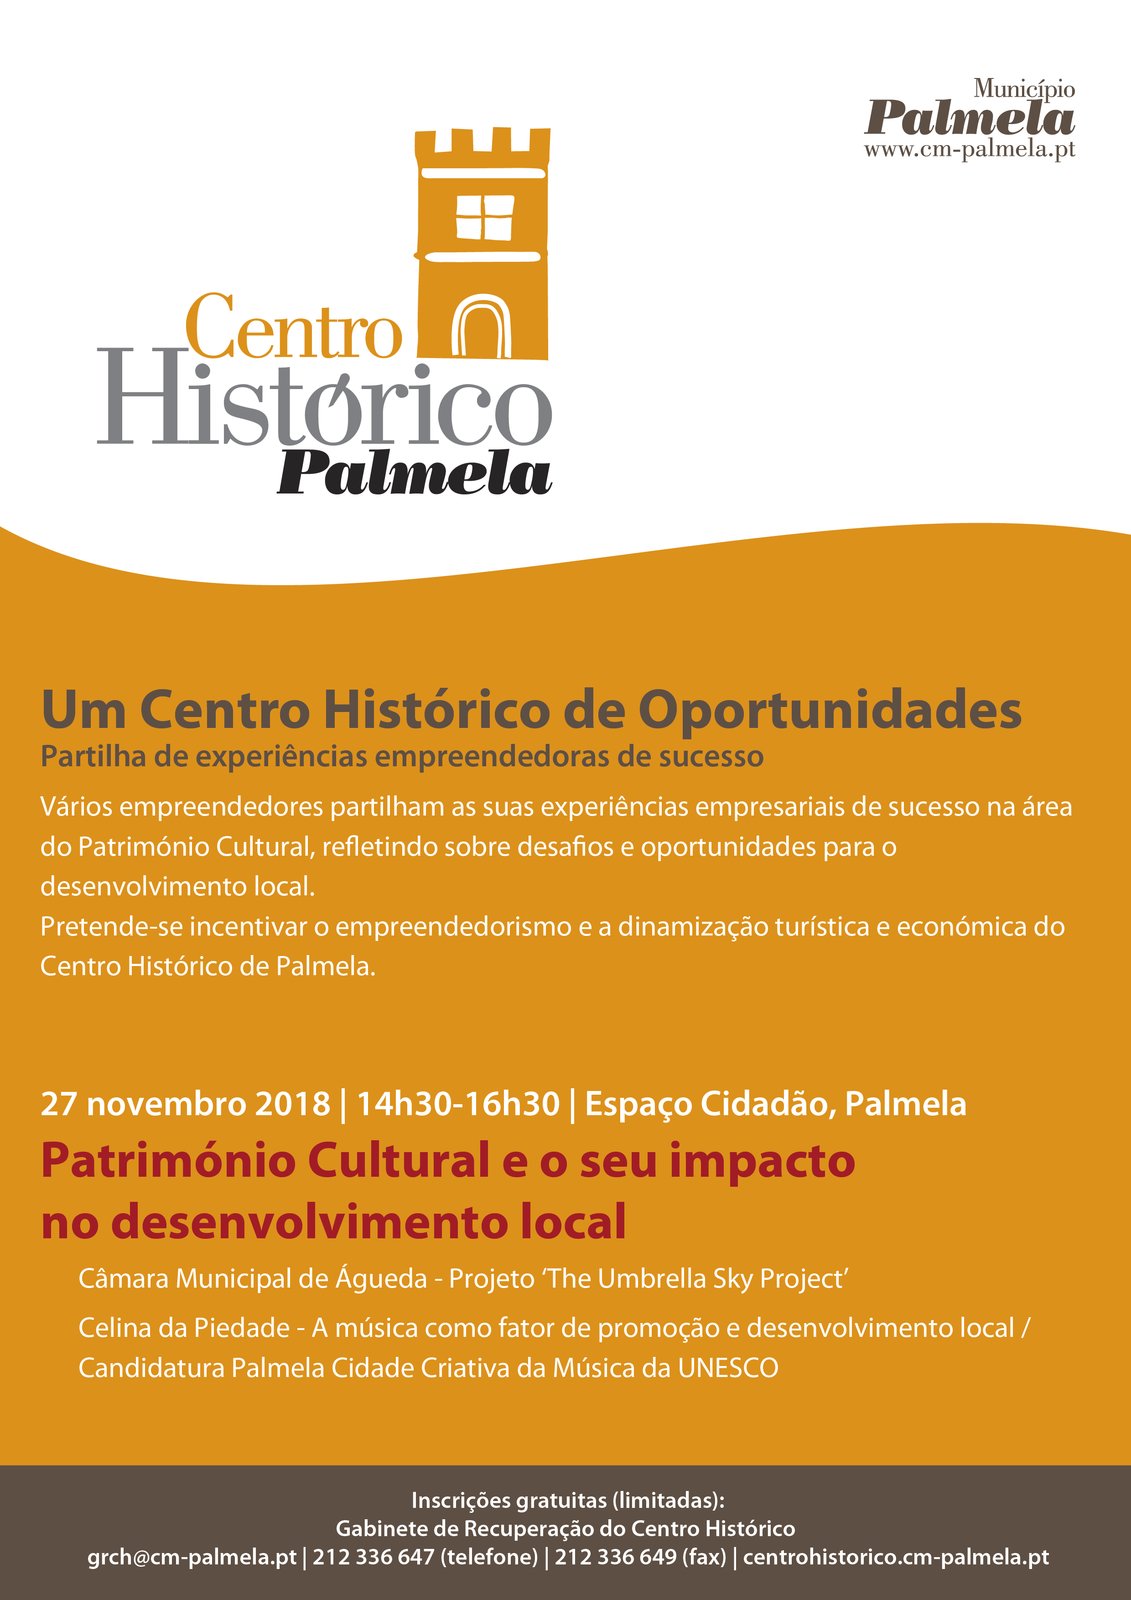 Um Centro Histórico de Oportunidades: Património Cultural e o seu impacto no desenvolvimento local